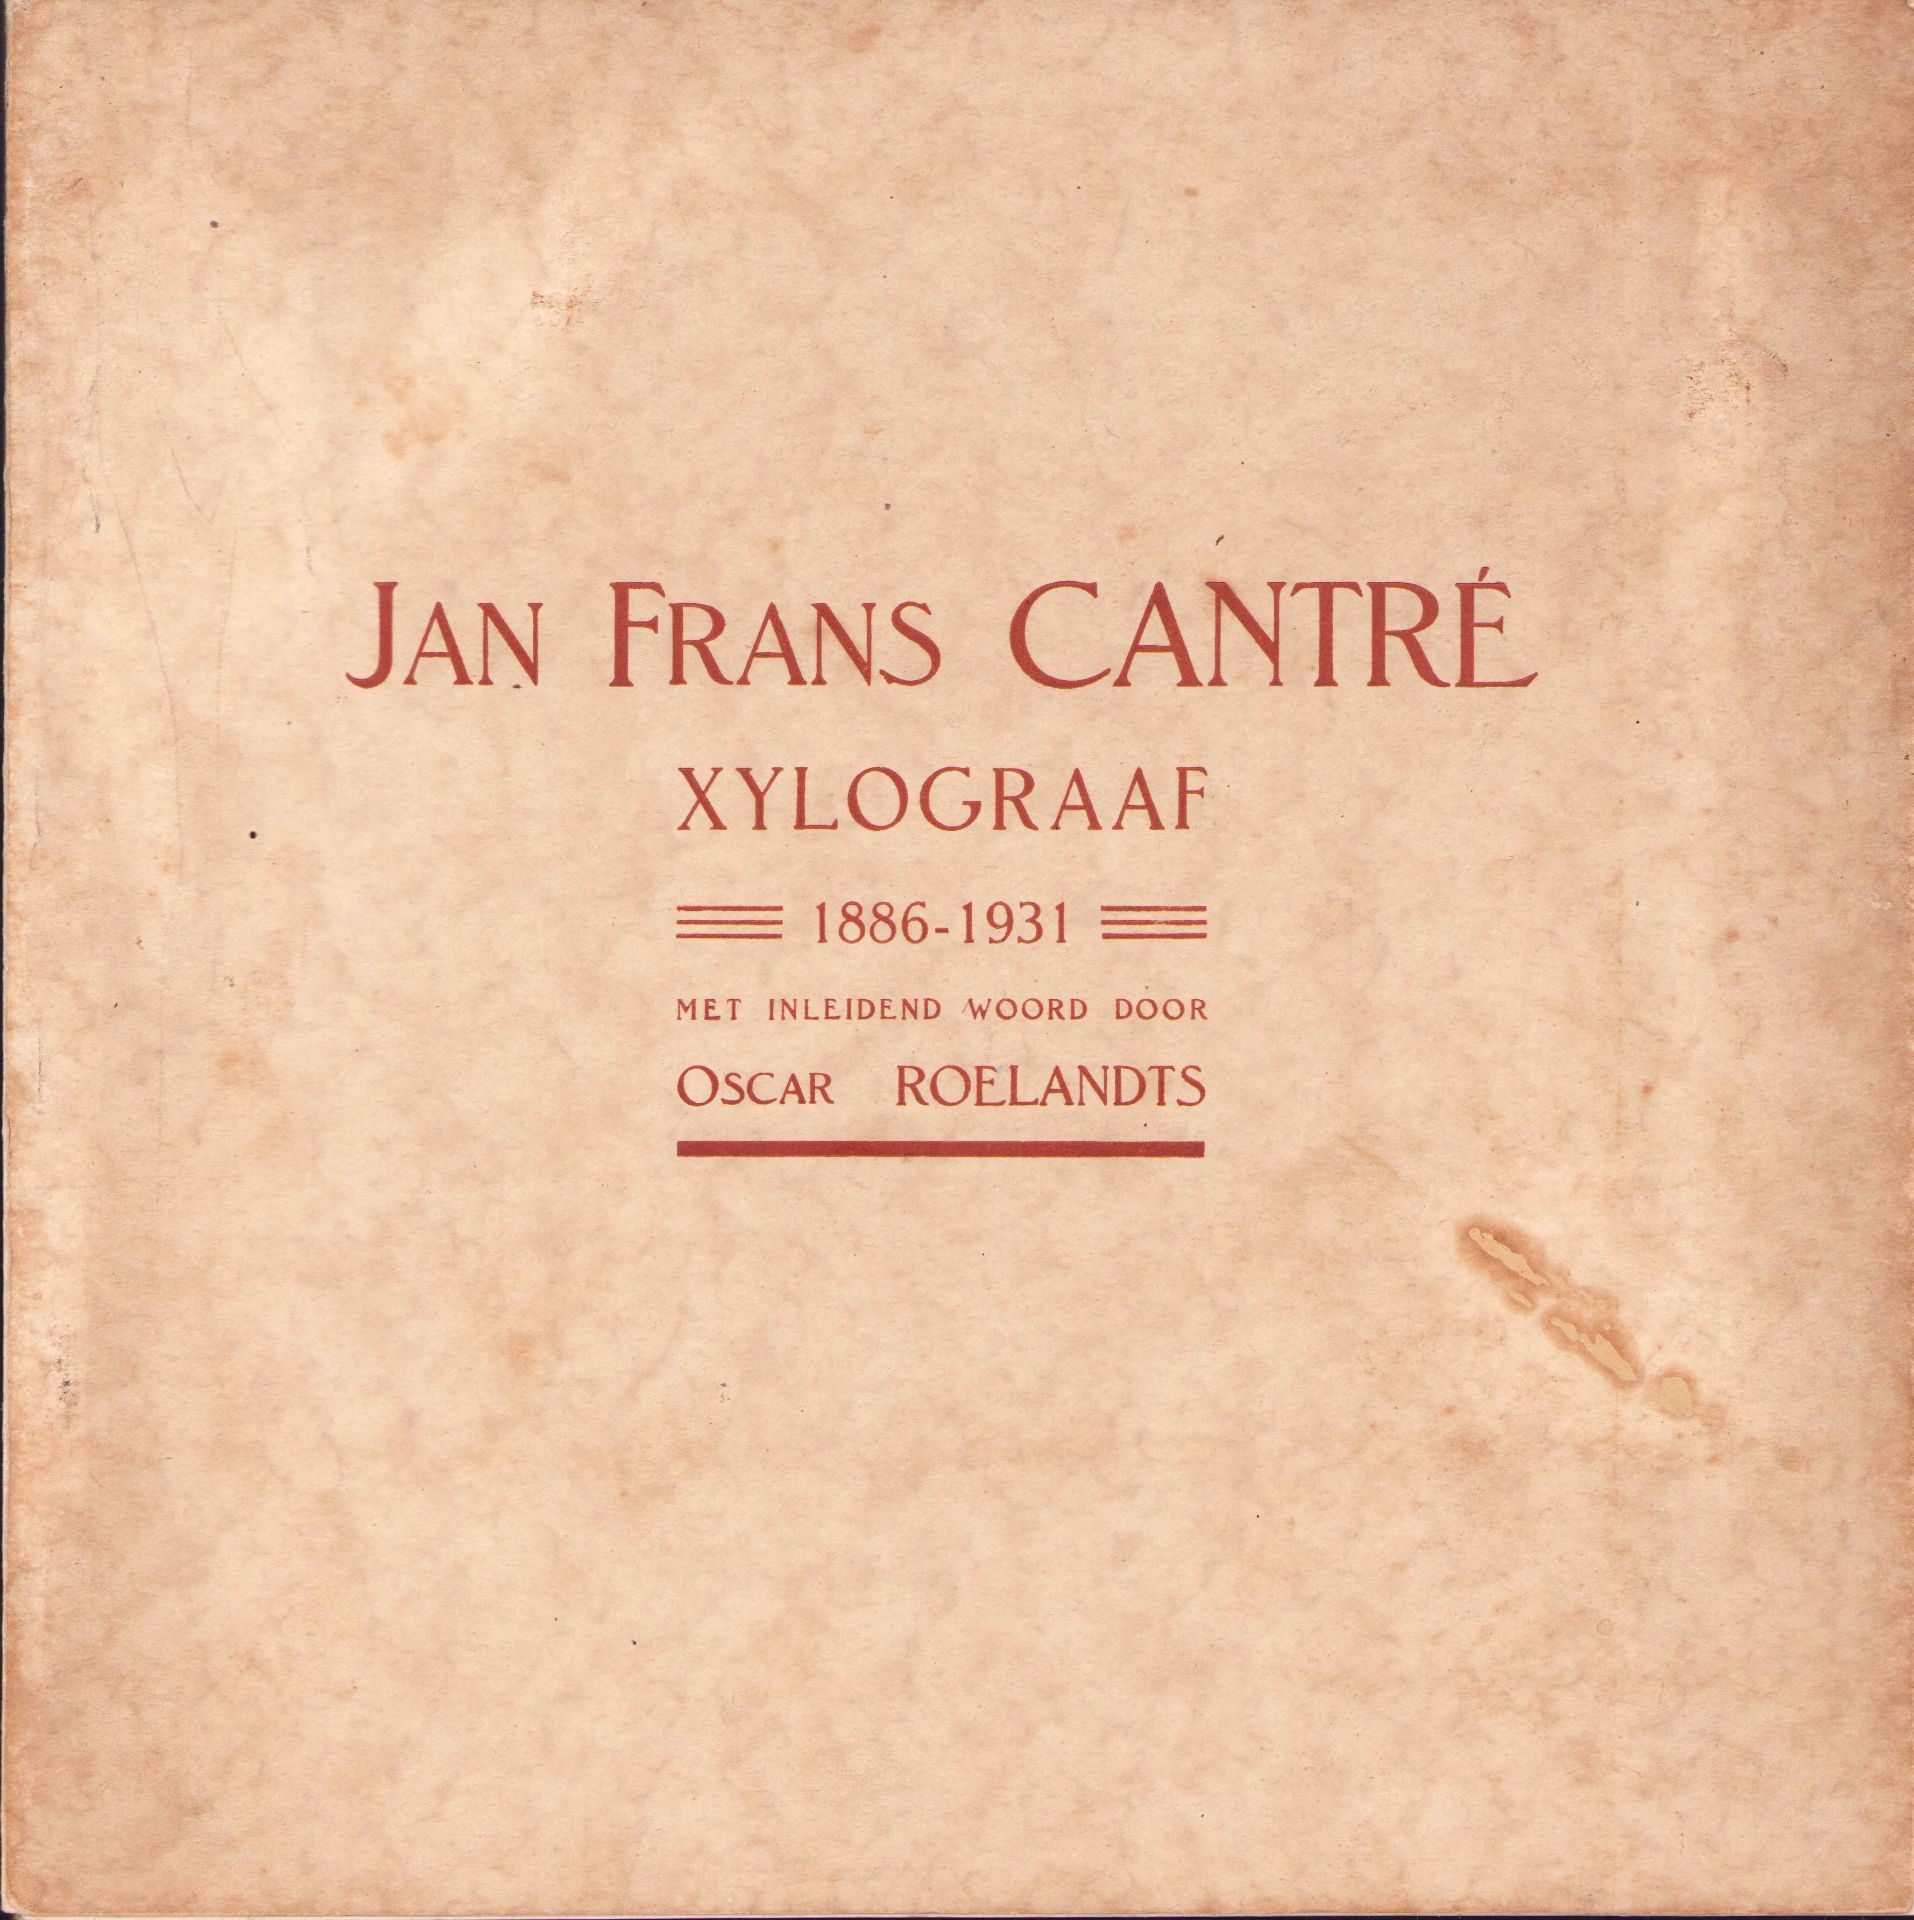 |Art| "Jan Frans Cantré Xylograaf", 193. Uitgave van de Koninklijke Academie van Schoone Kunsten,